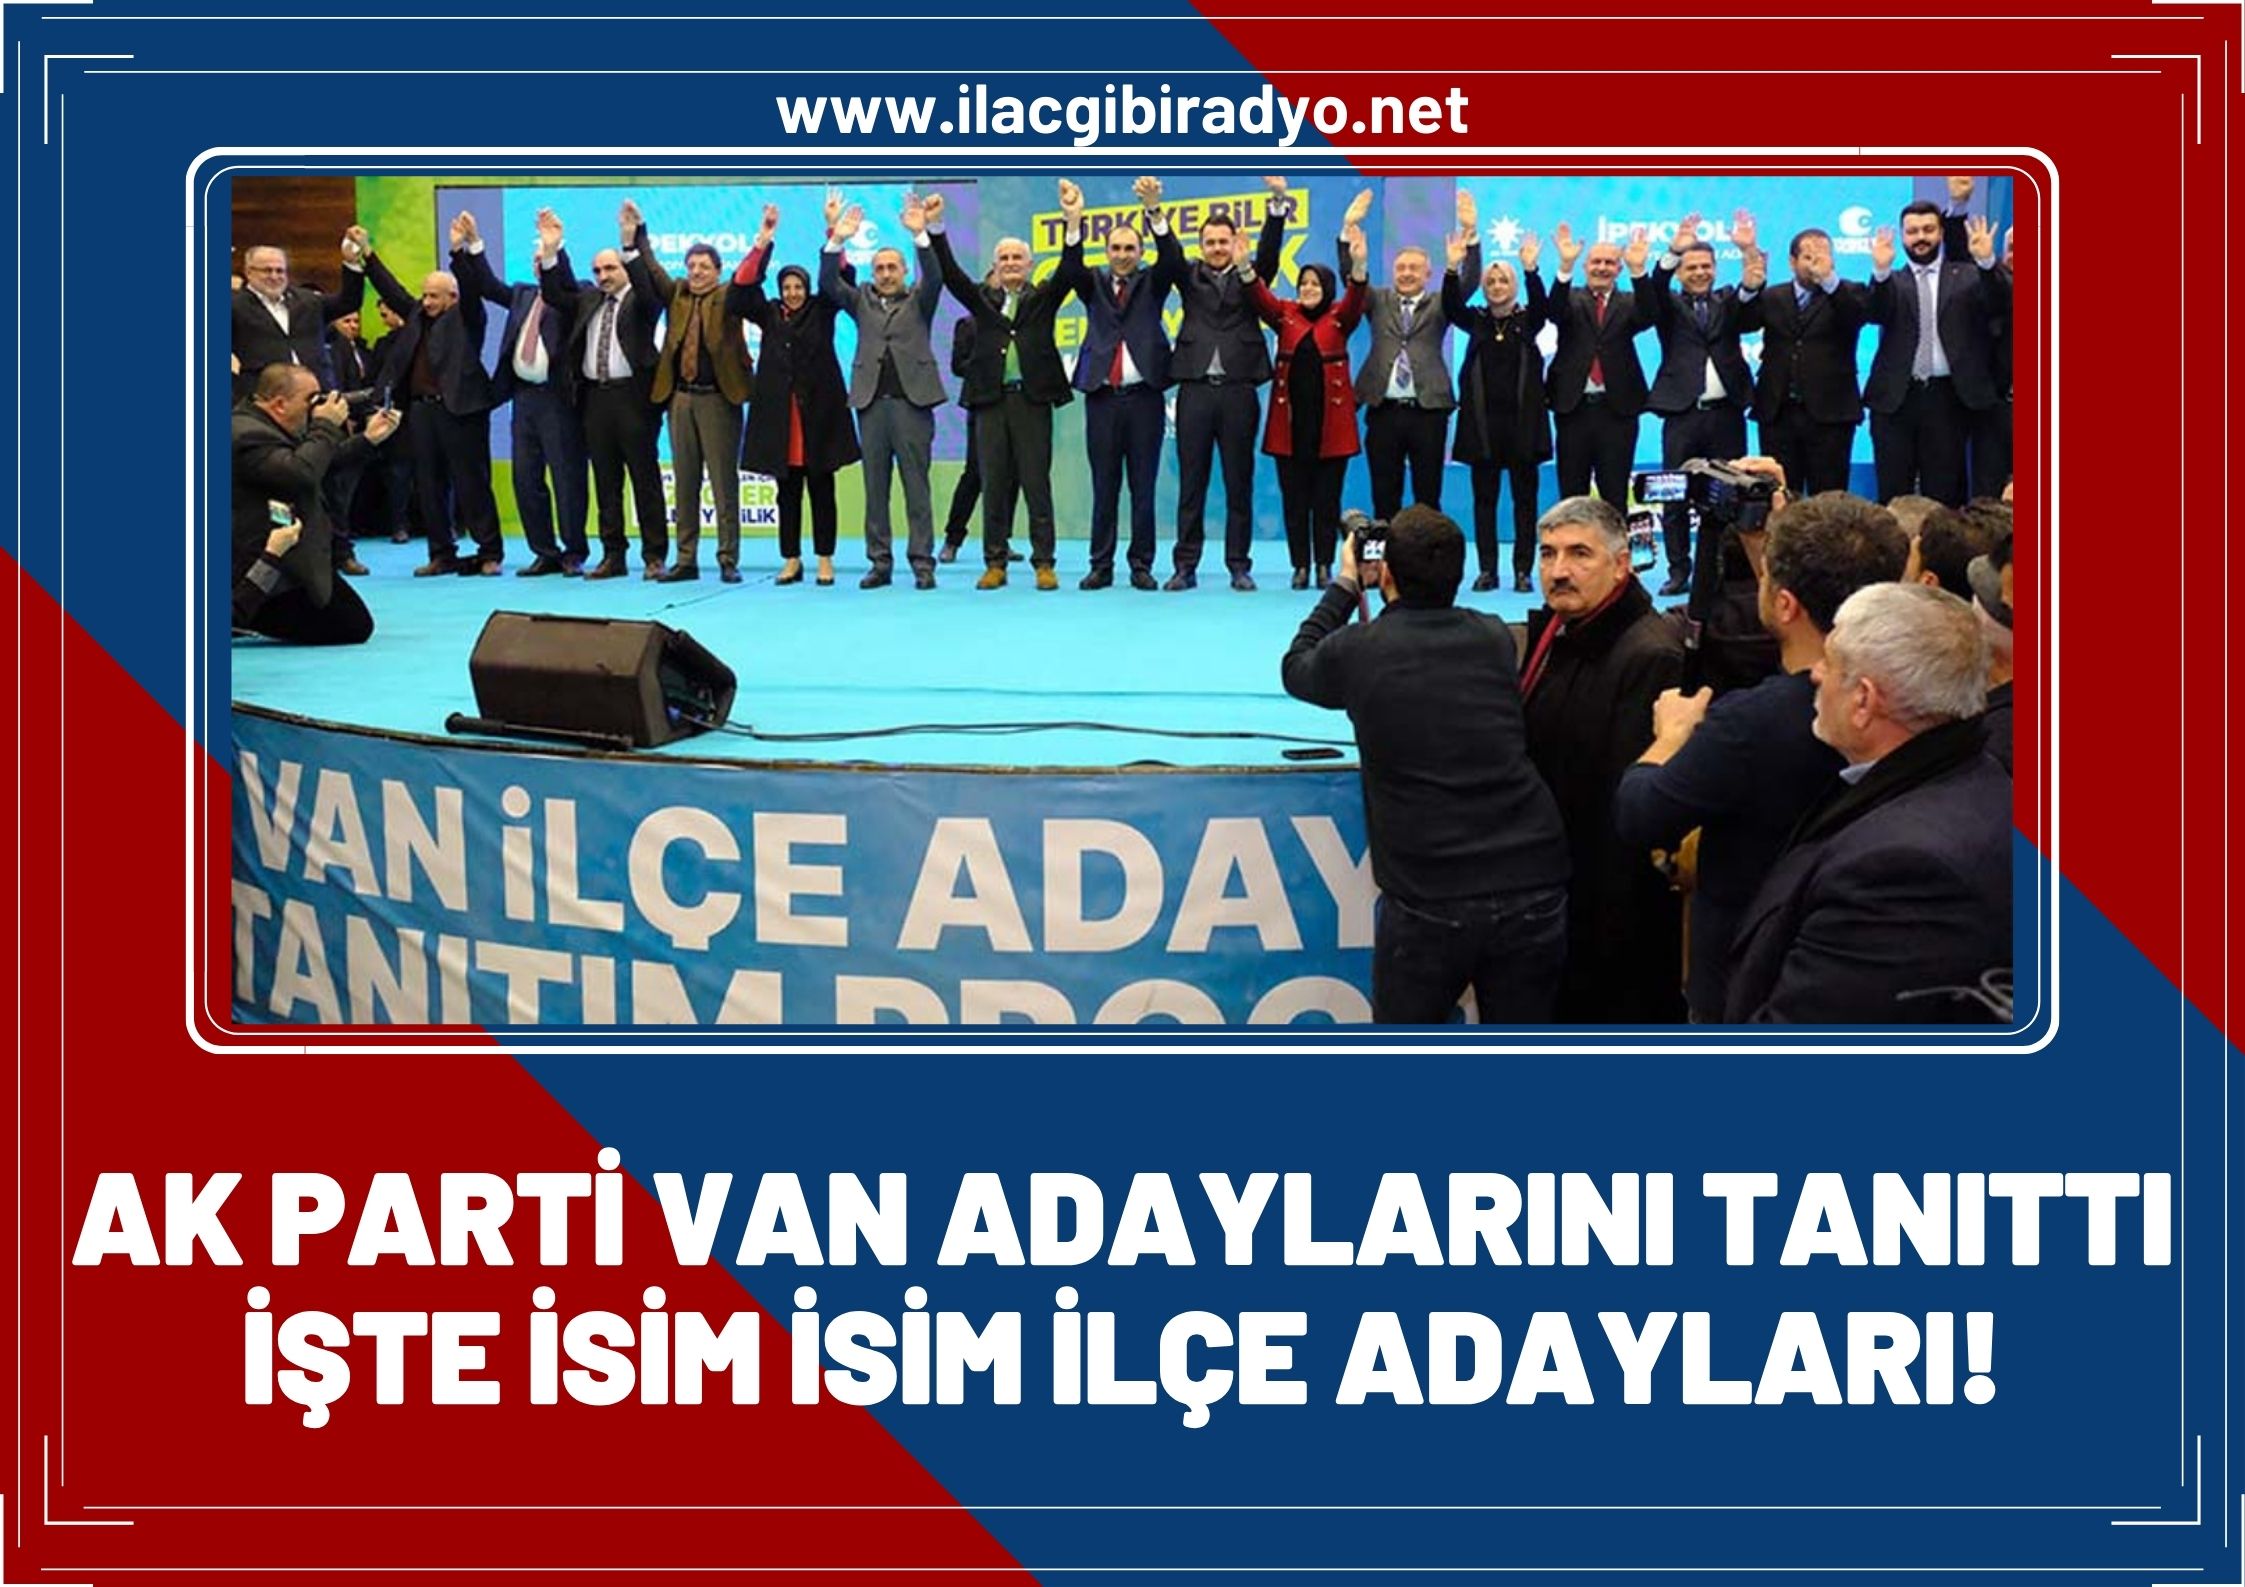 AK Parti Van adaylarını tanıttı! İşte isim isim ilçe adayları...